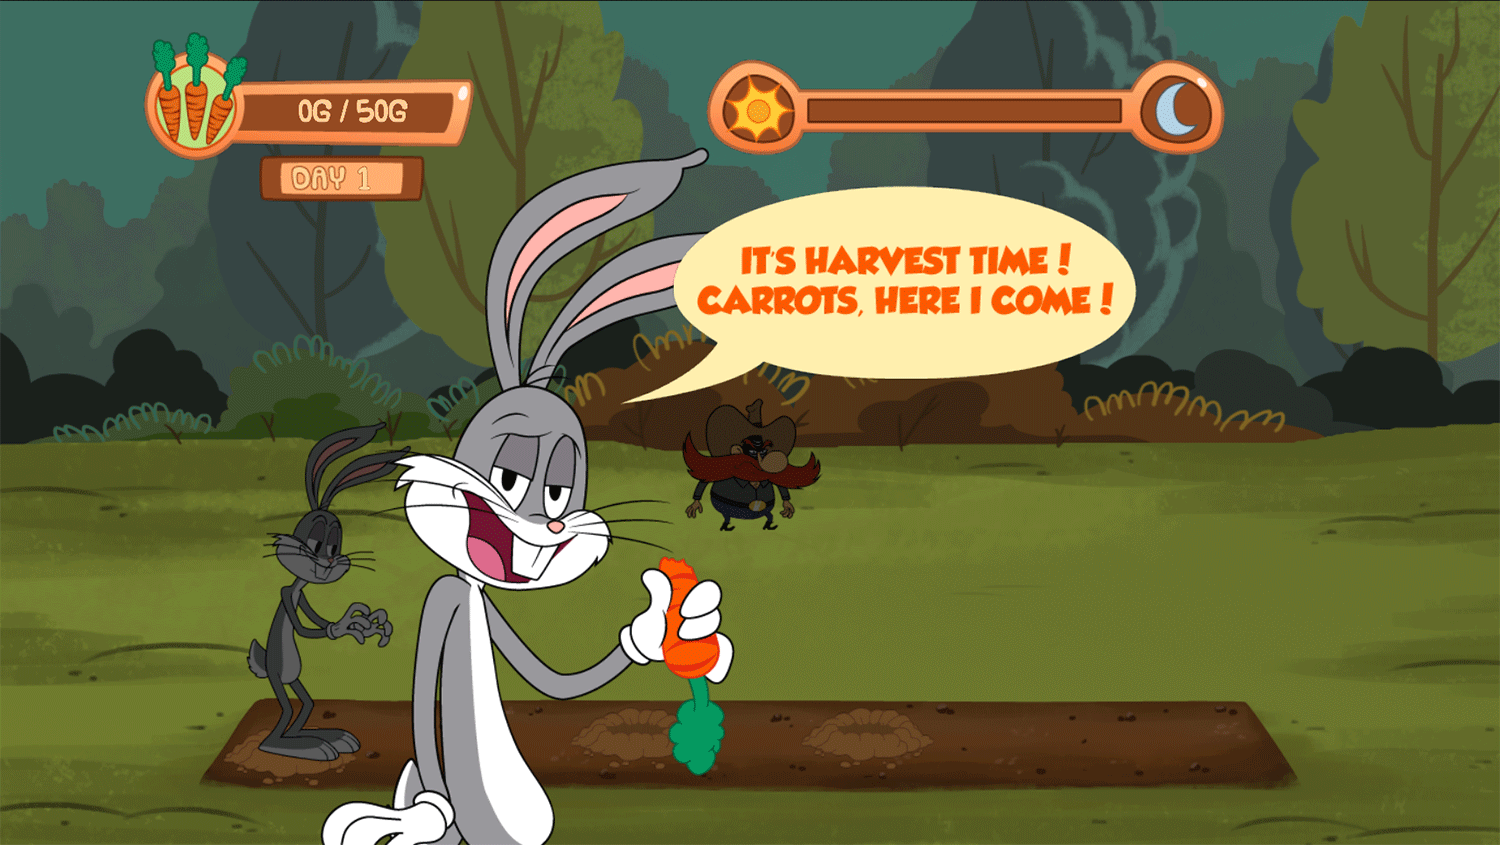 Bugs Bunny Carrot Crisis Introduction Screenshot.